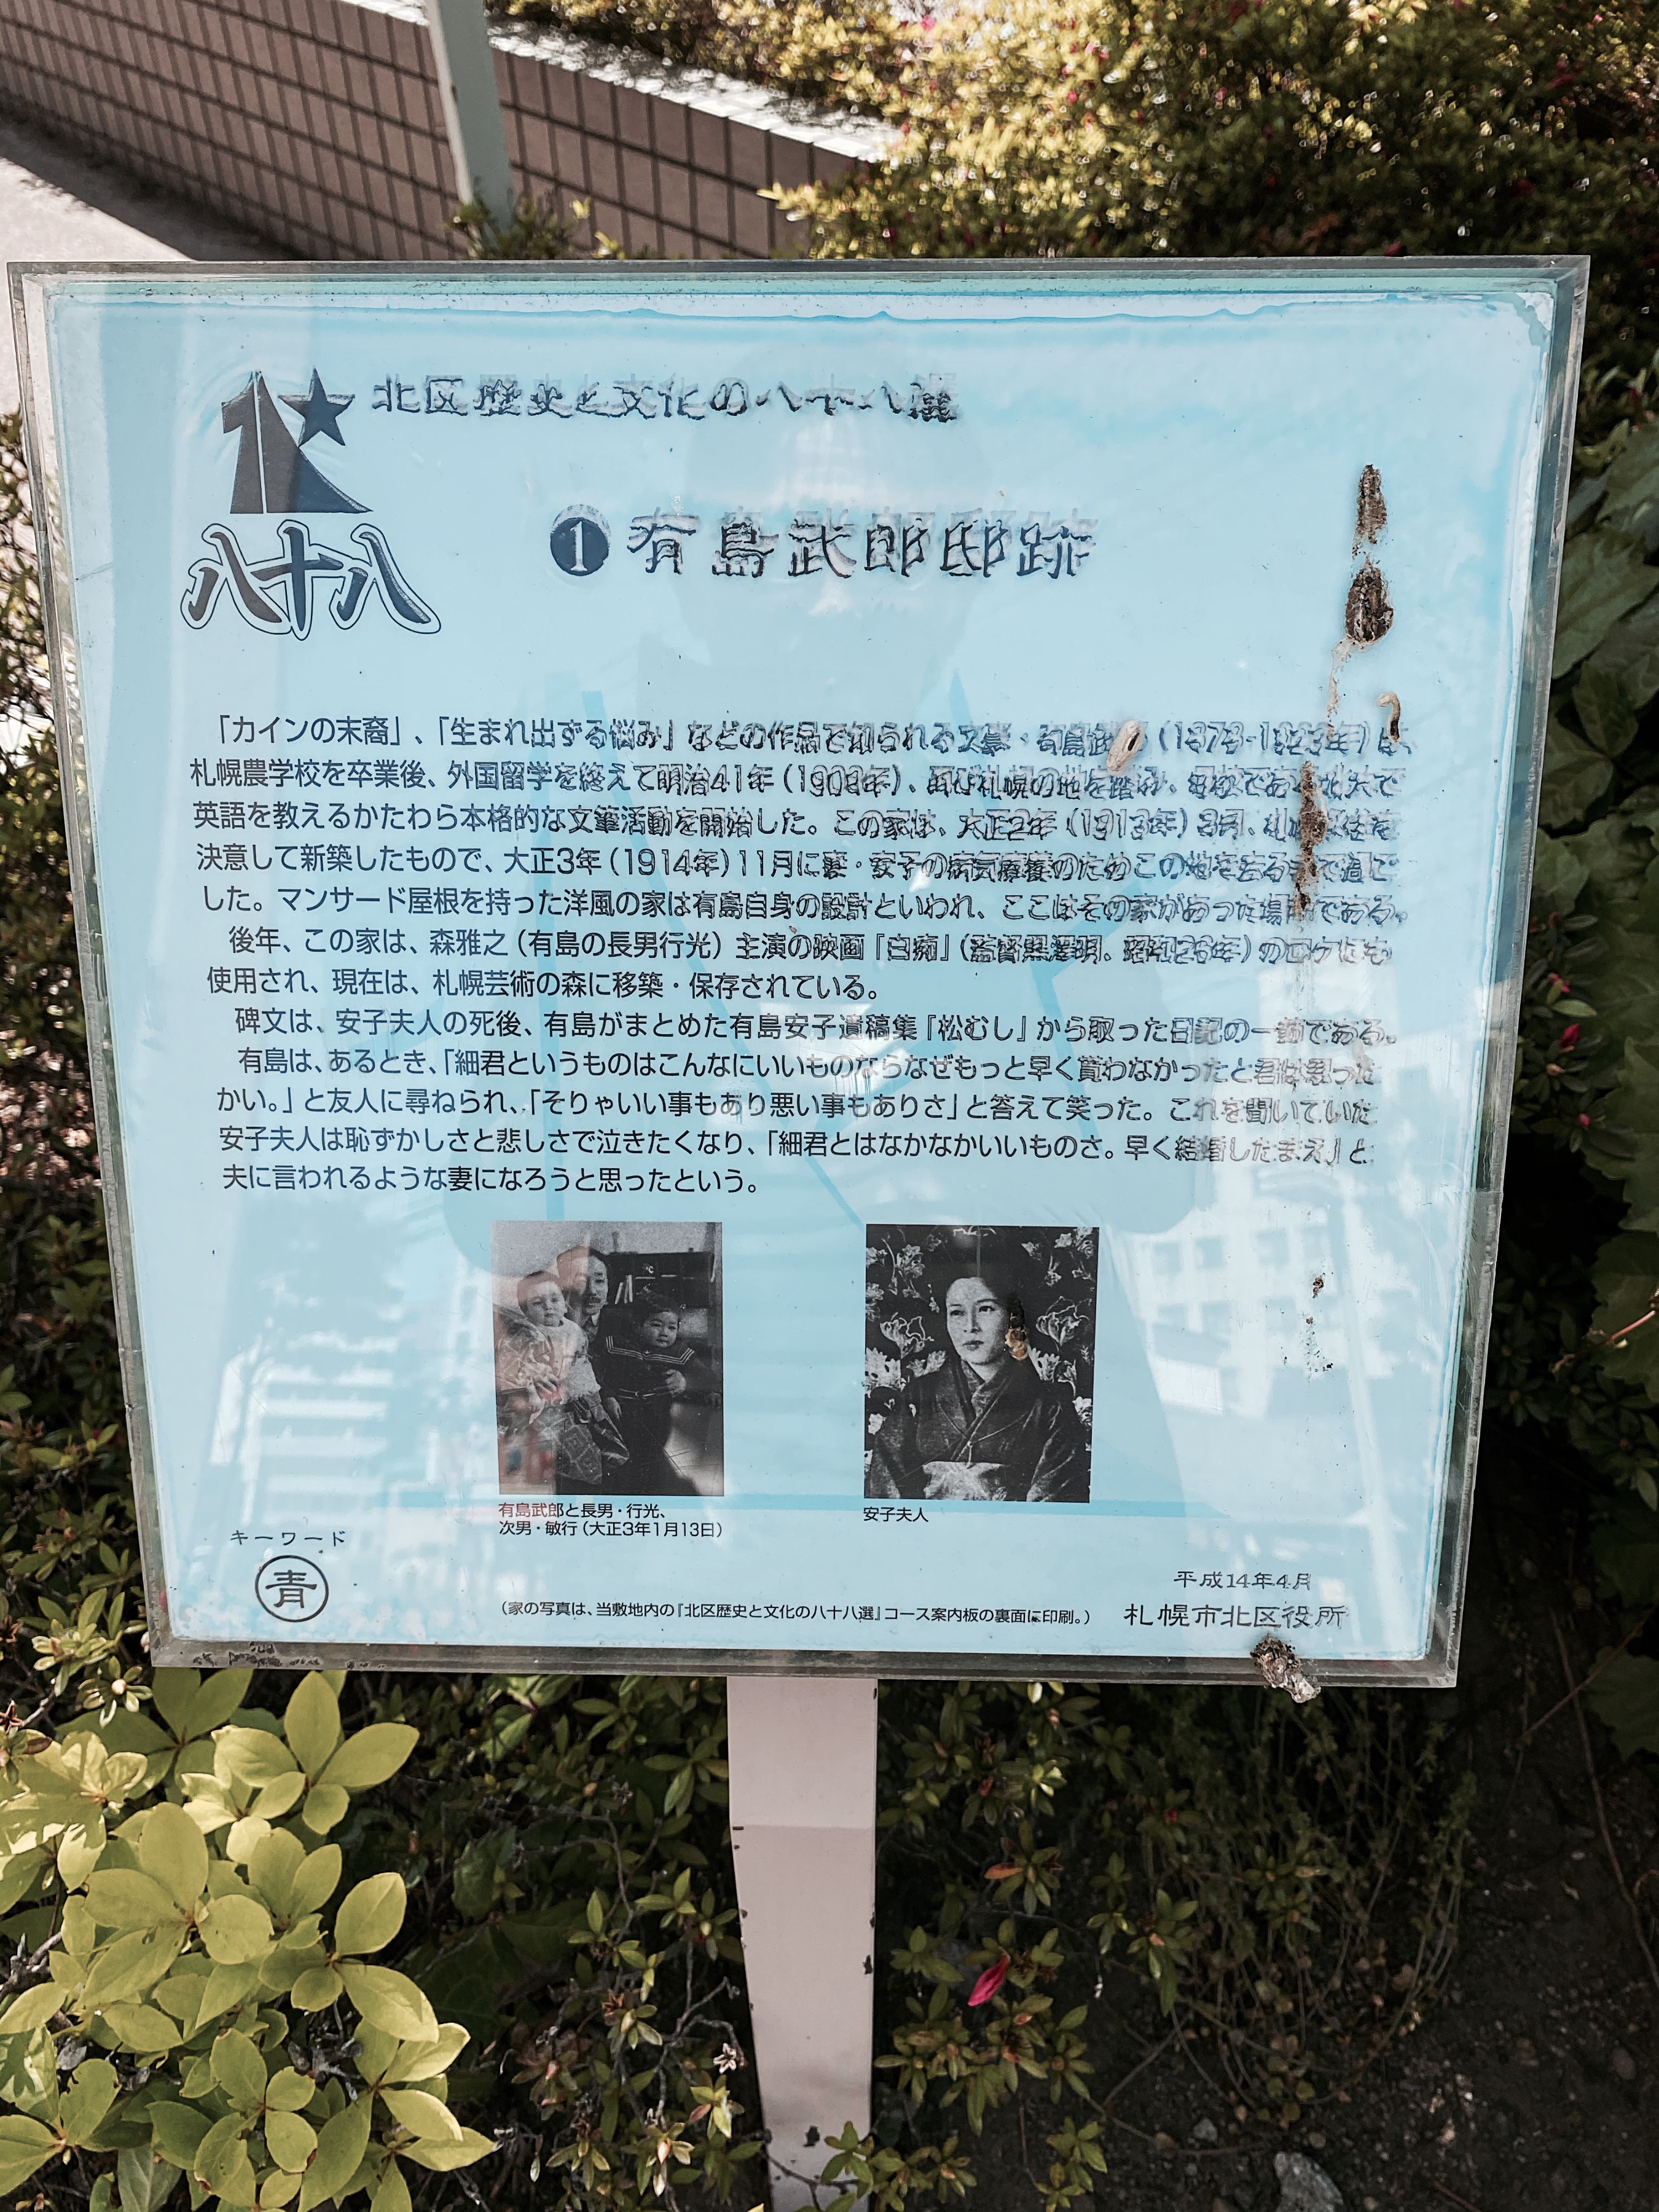 「北区歴史と文化の八十八選」として設置されている「有島武郎邸跡」の解説版